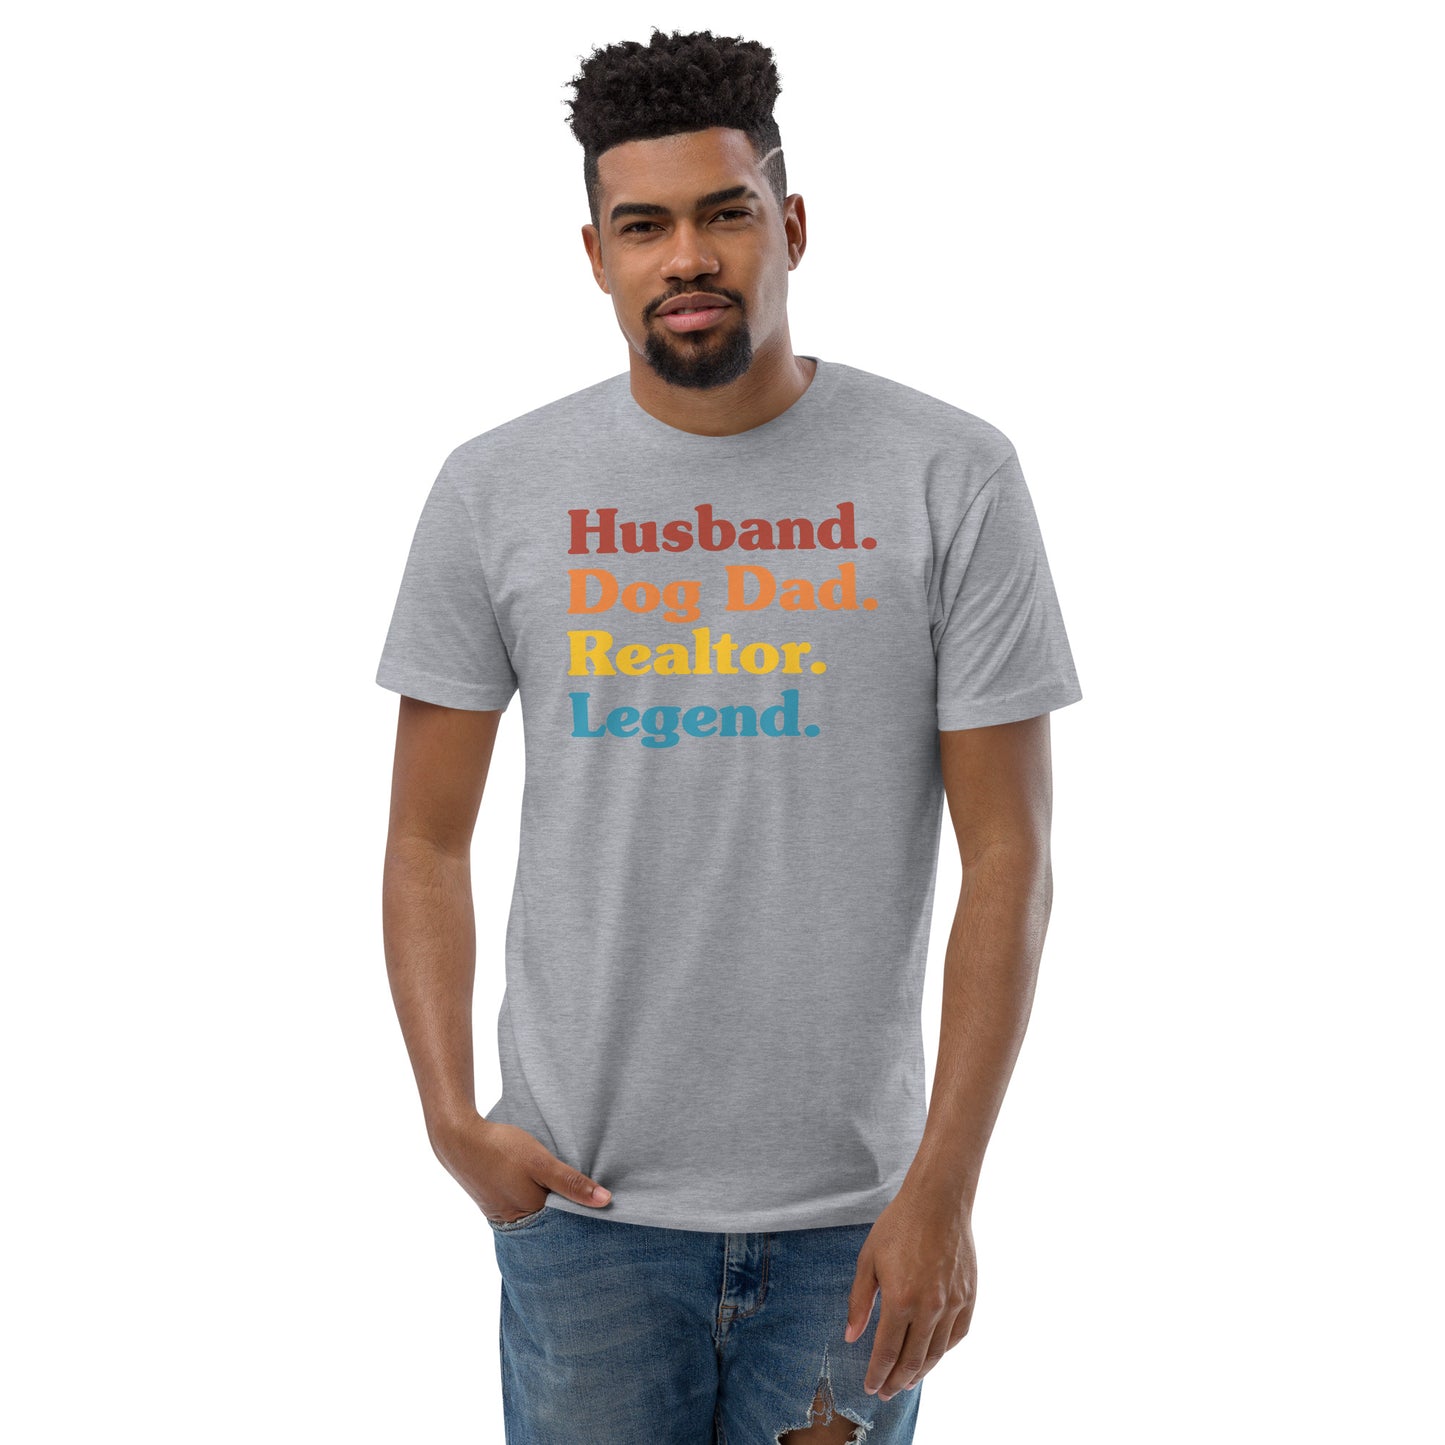 Short Sleeve T-shirt "Husband. Dog Dad. Realtor. Legend."